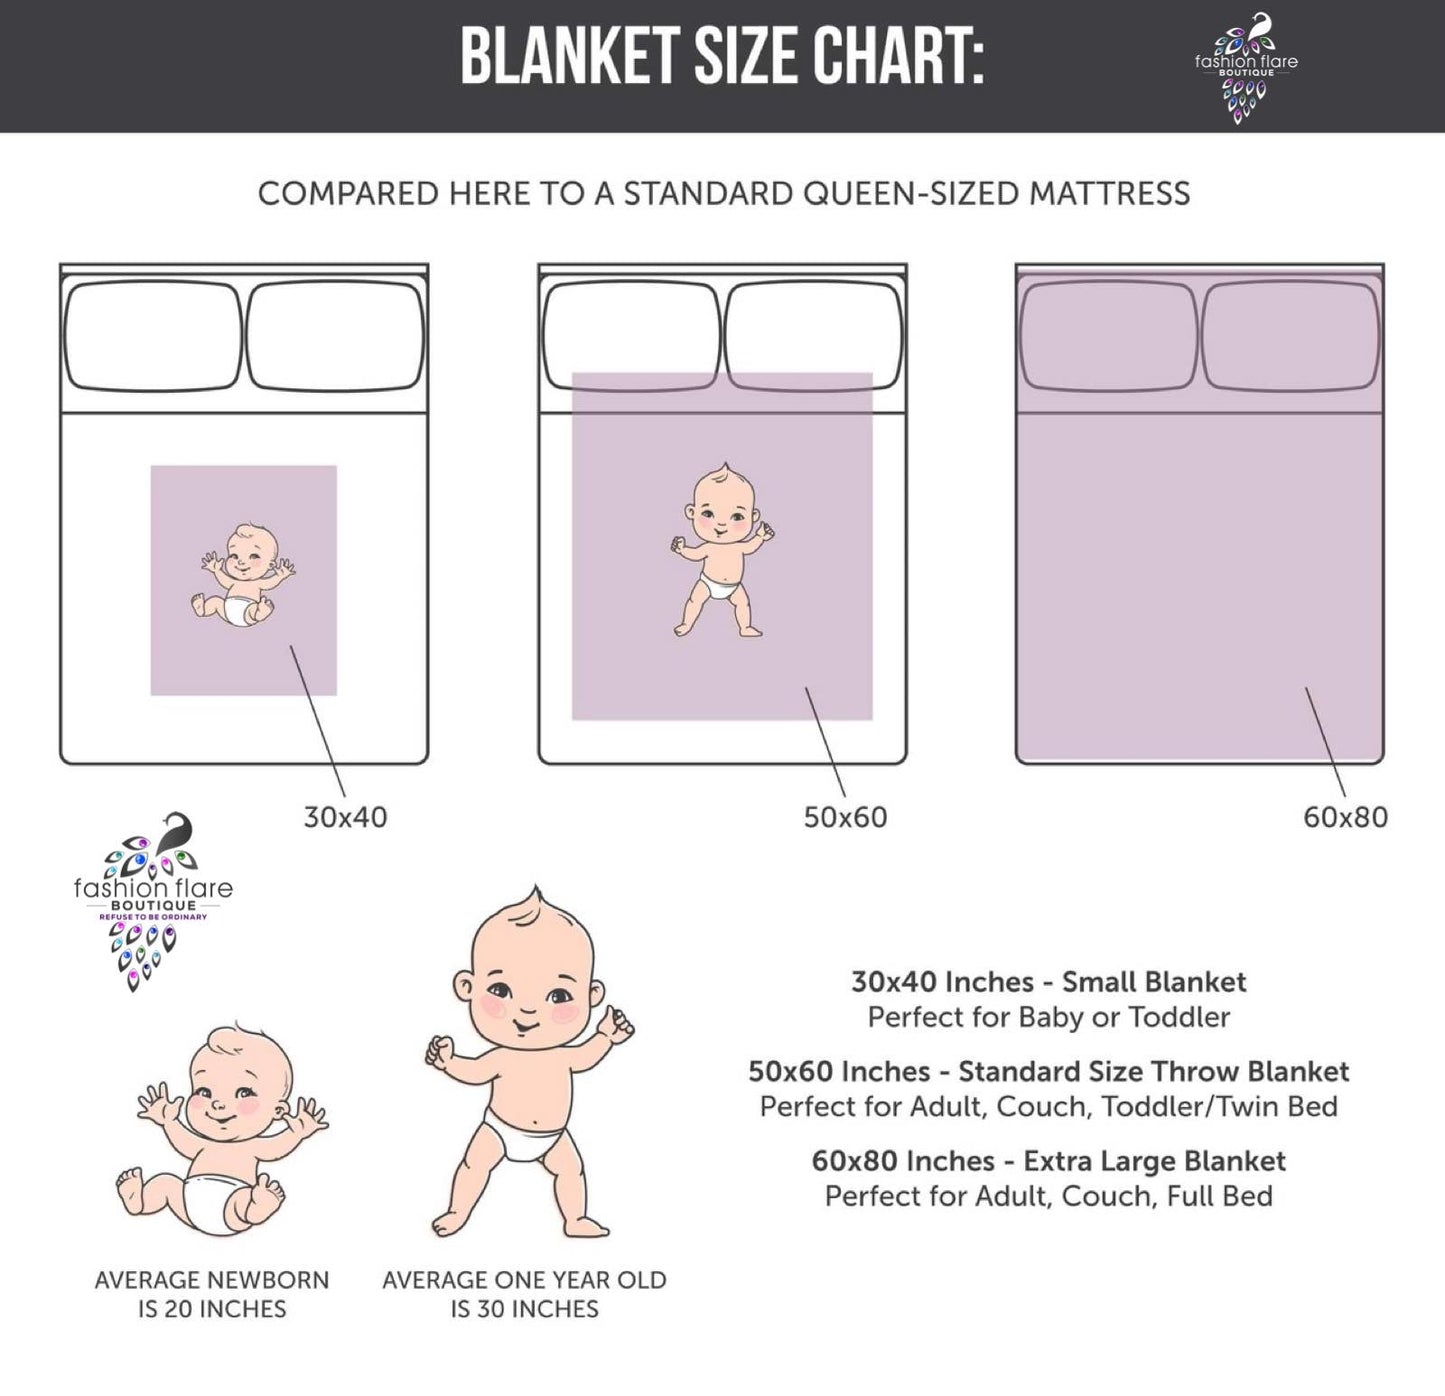 Custom Personalized Plush Minky Blanket - Camo 60x80